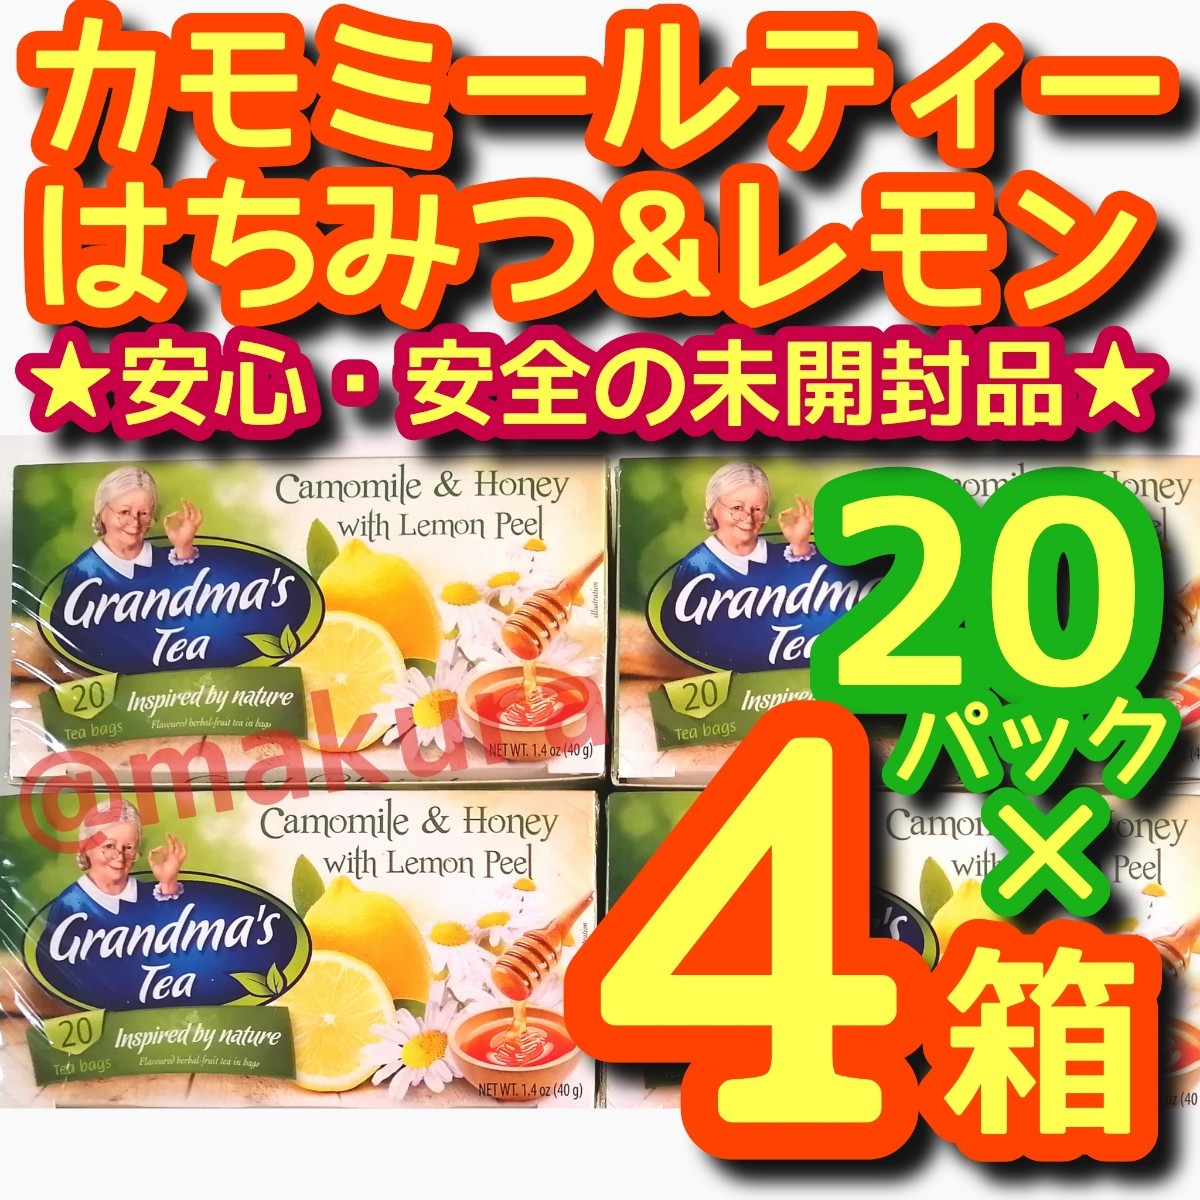 【未開封品】カモミールティーはちみつ&レモン ハニーレモン 2g×20パック入り 4箱